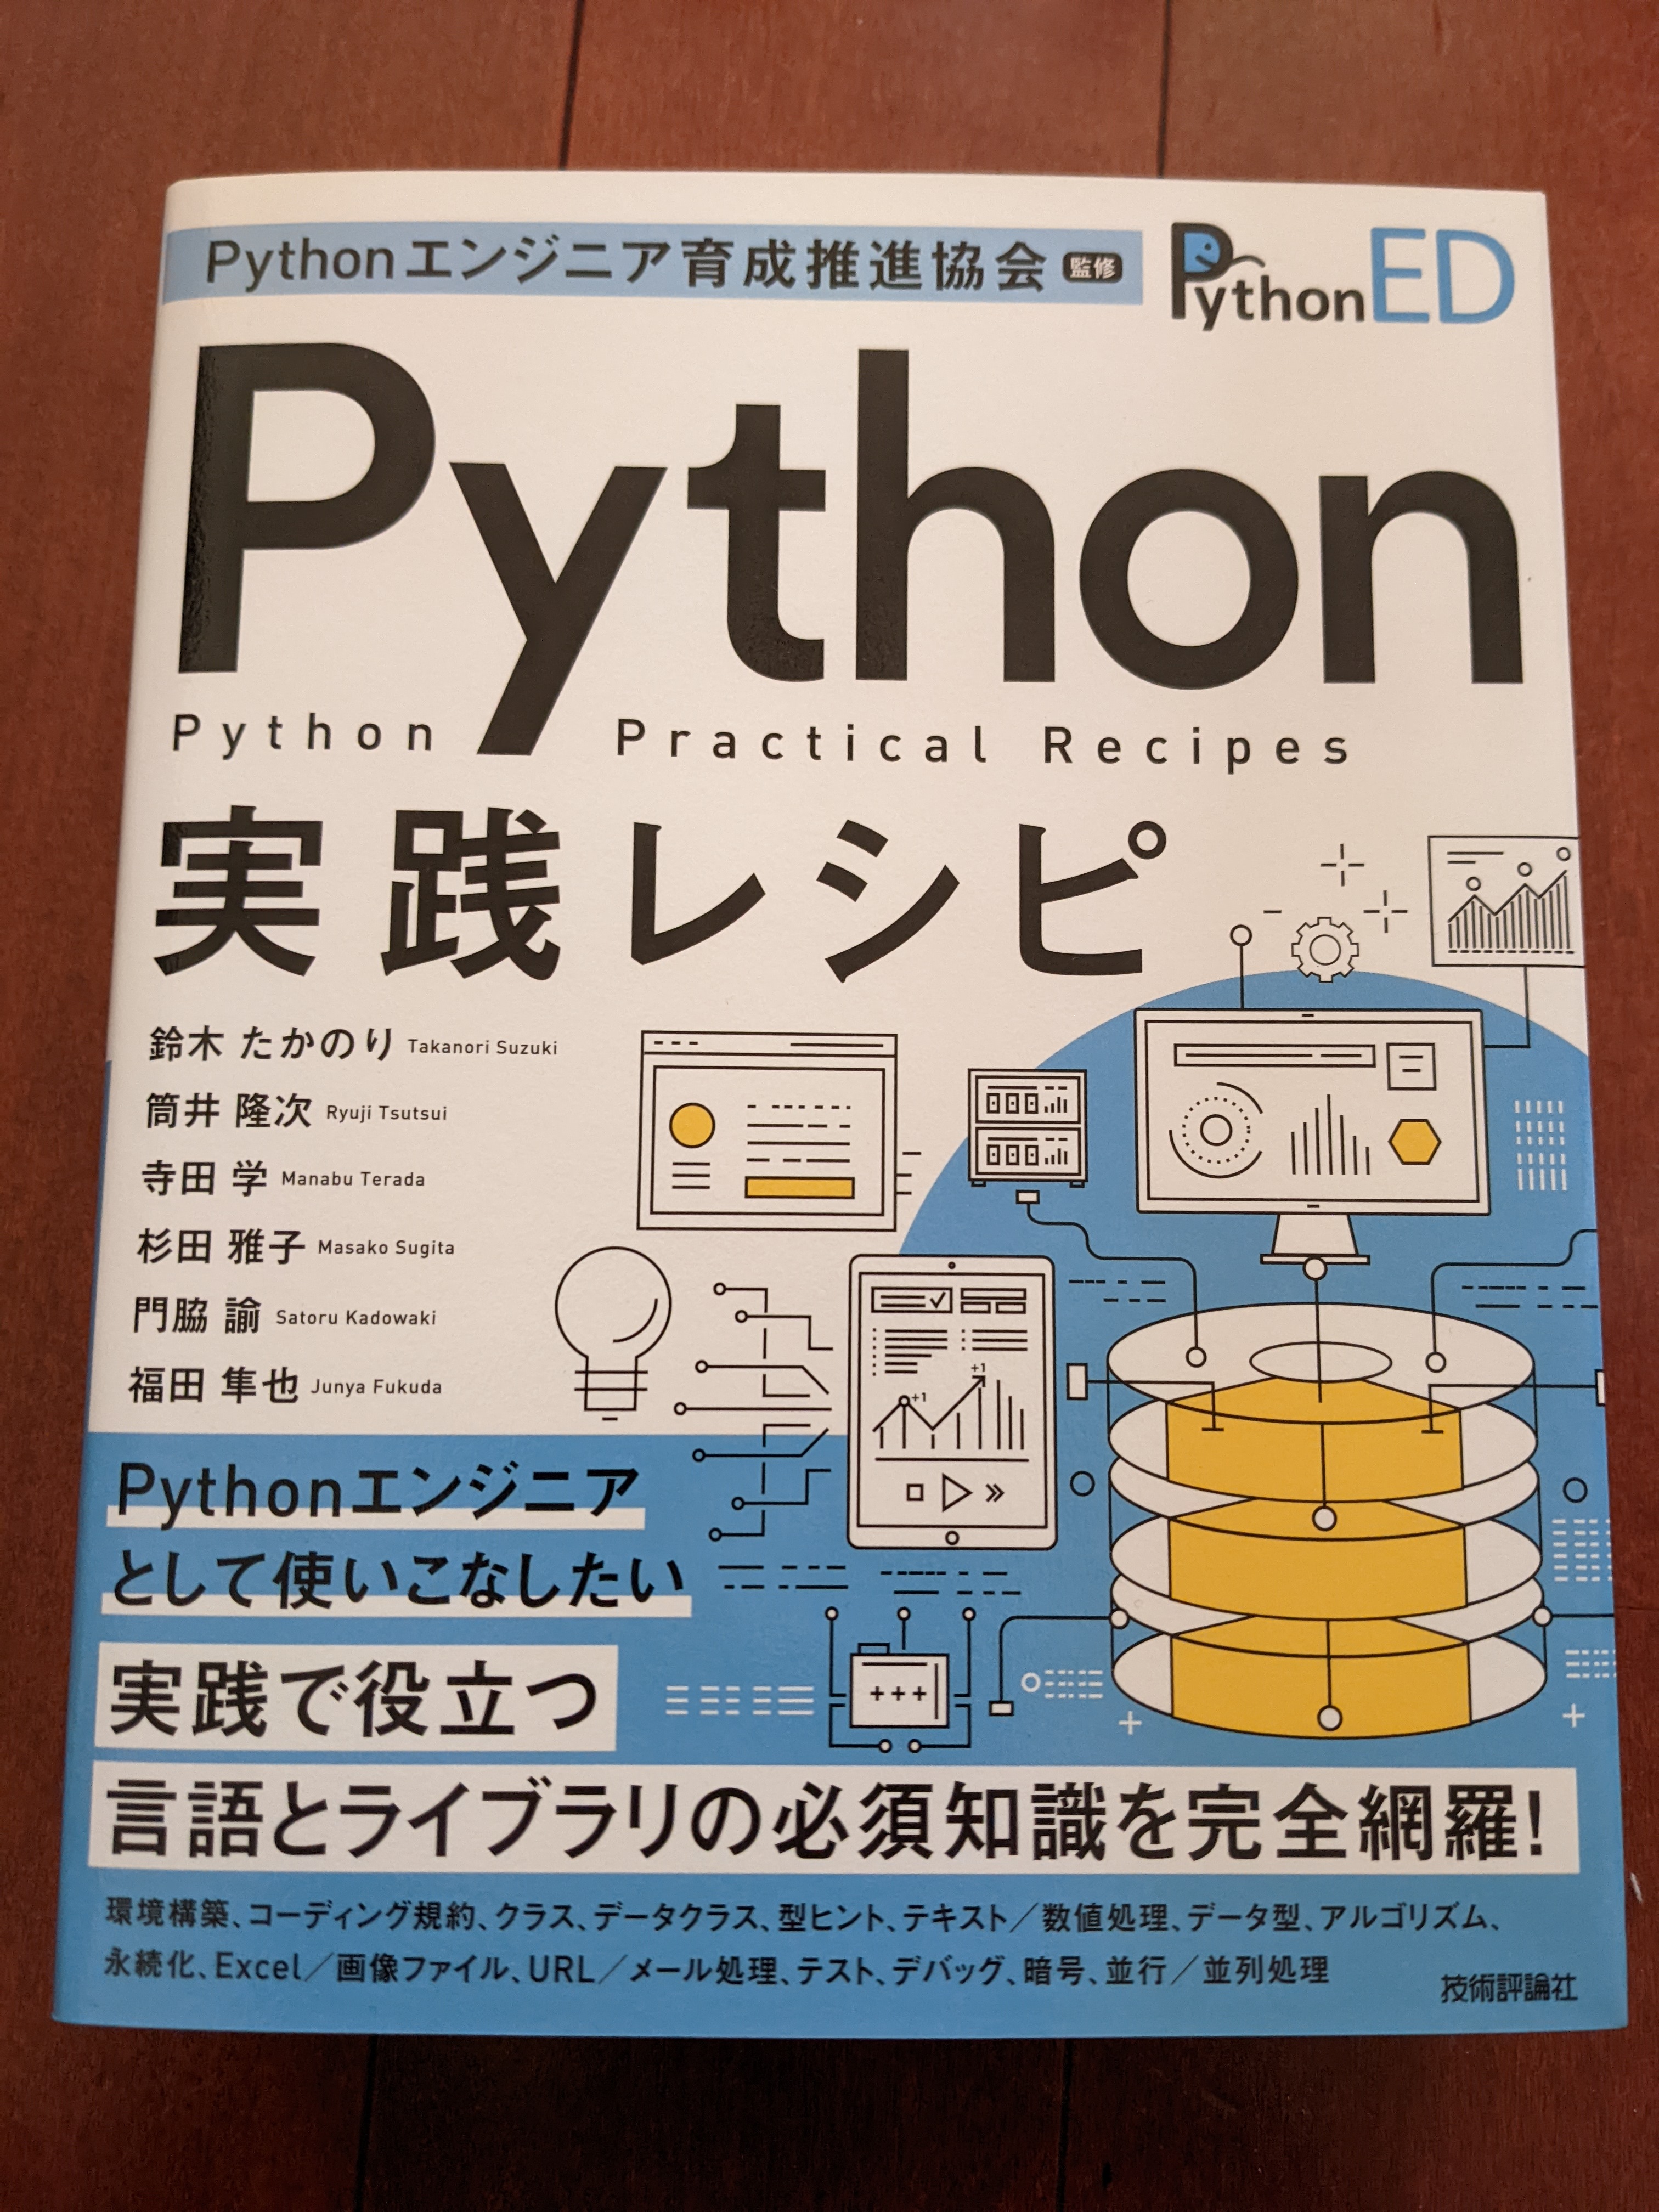 ../_images/python-recipes-book.jpg